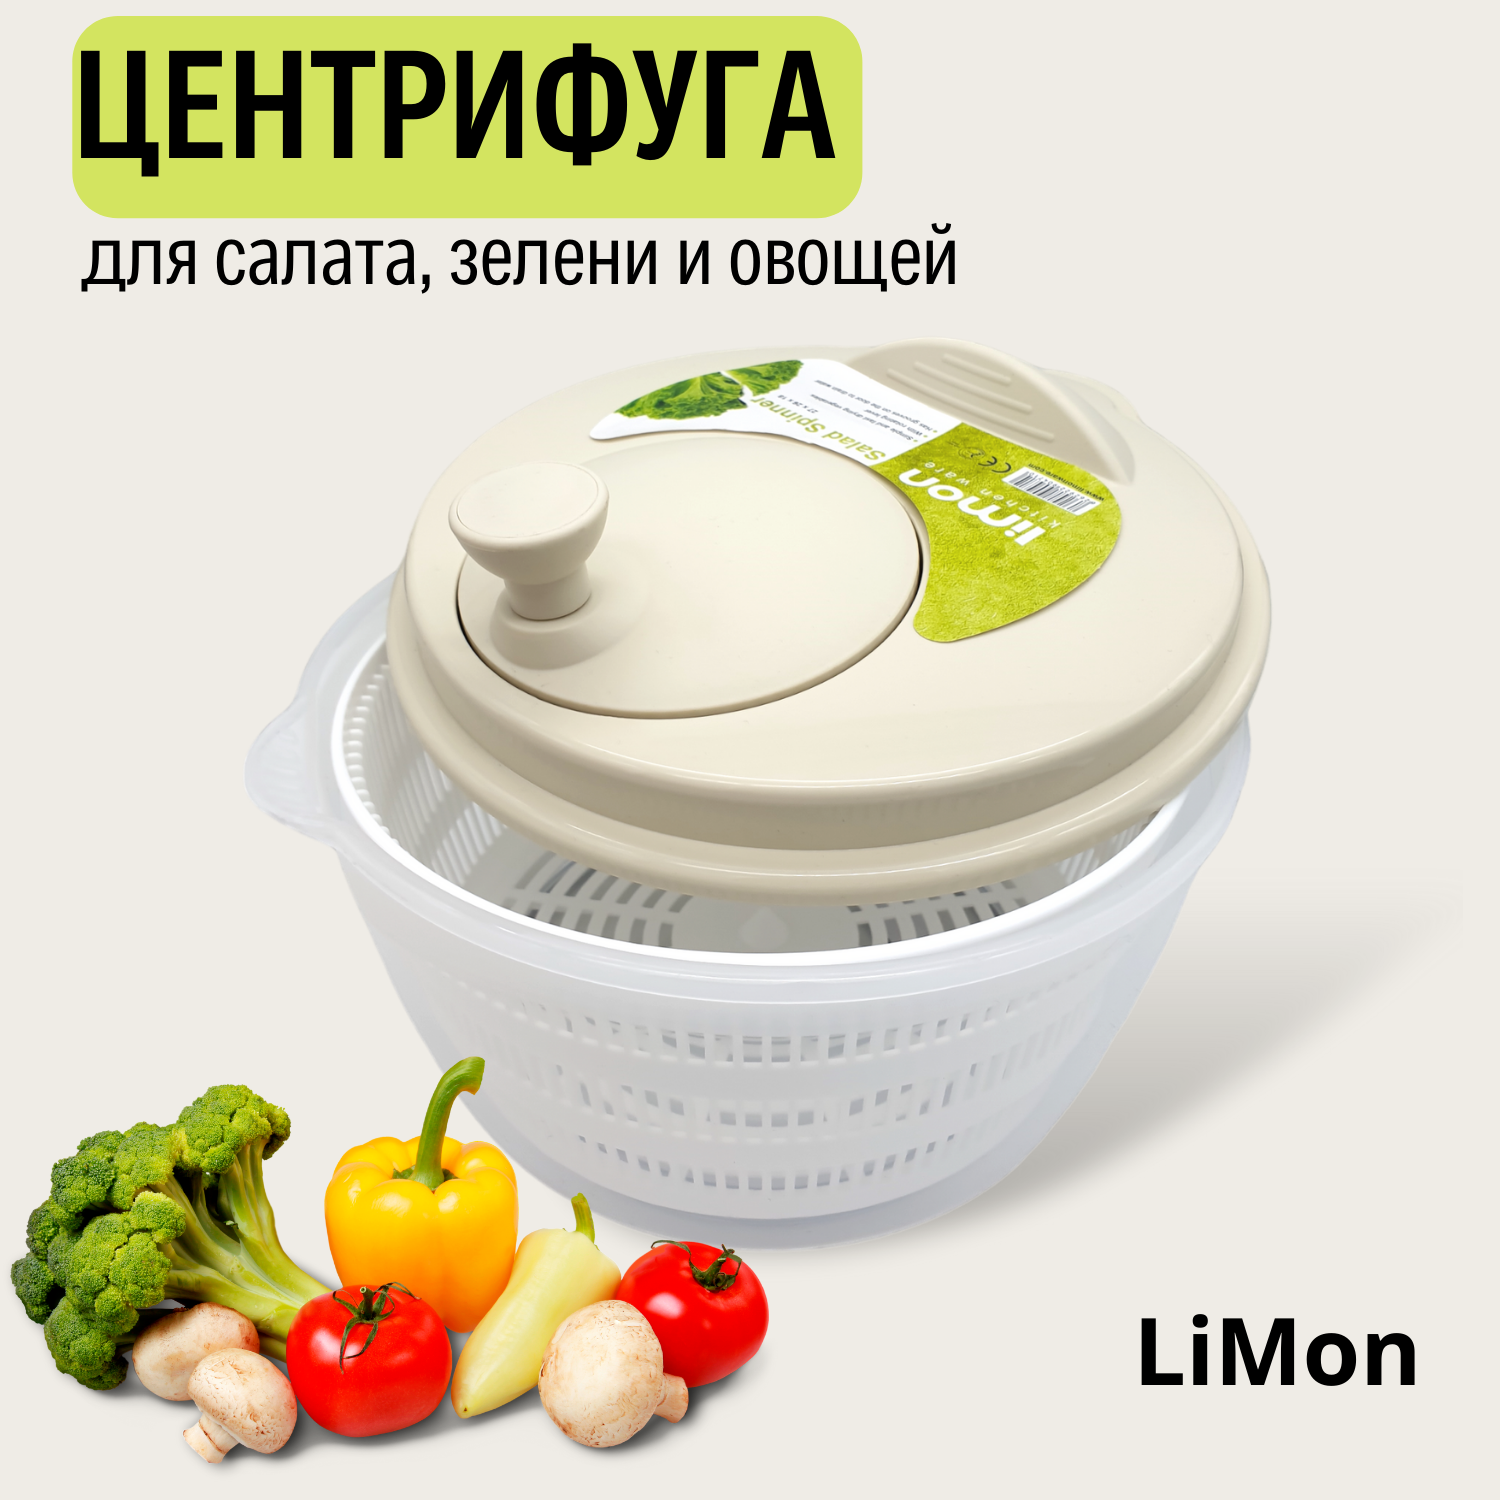 Центрифуга-сушилка LiMON для салата, зелени и ягод